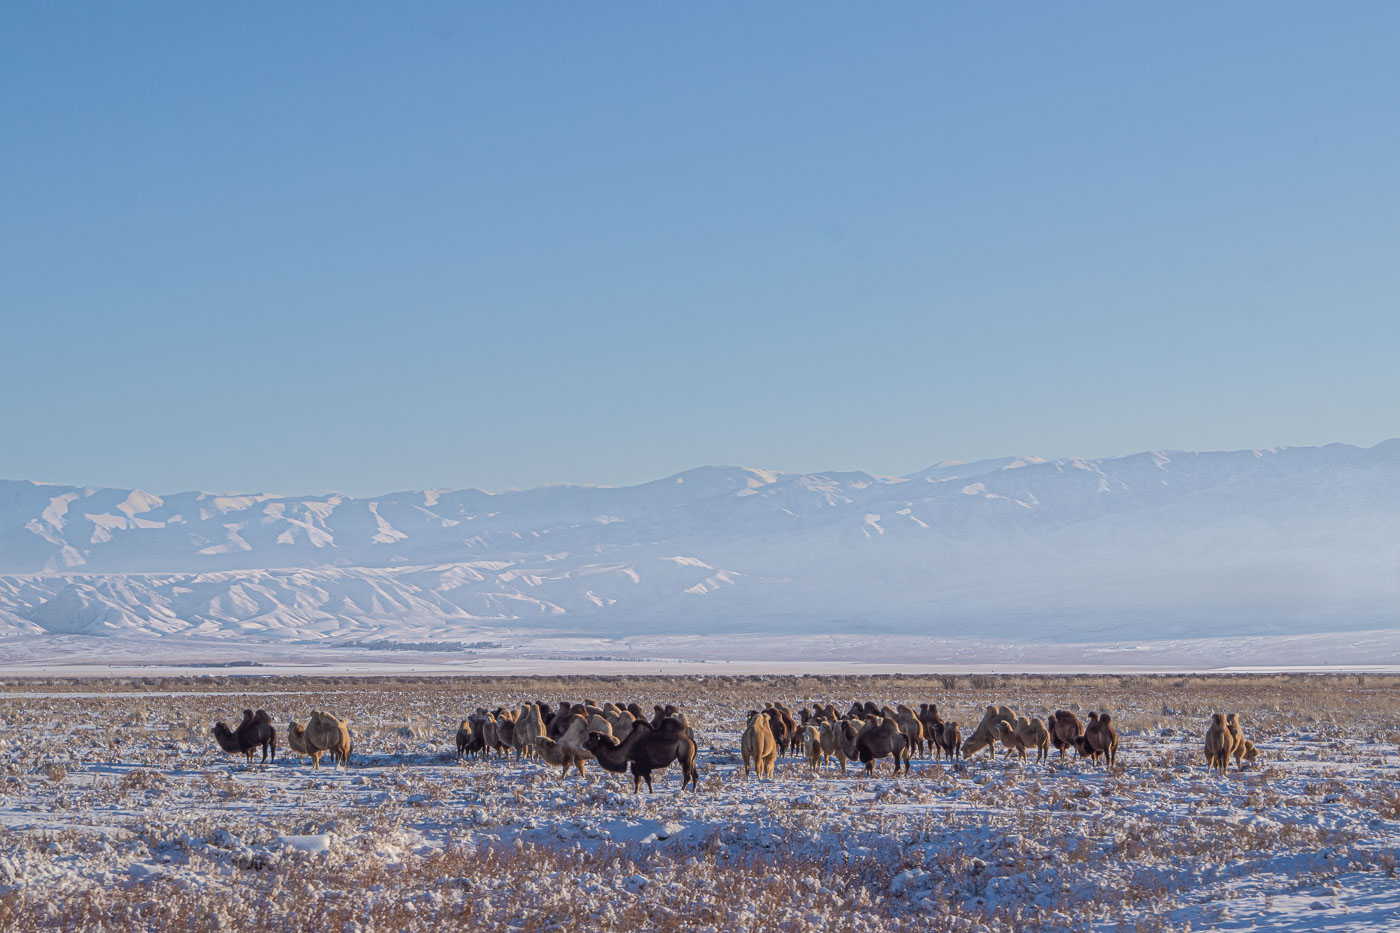 zu sehen ist eine große Herde Kamele mit Winterfell die auf der schneebedeckten Steppe nach fressbarem suchen. im Hintergrund ragen teilweise durch Dunst verschleierte schneebedeckte Berge auf.